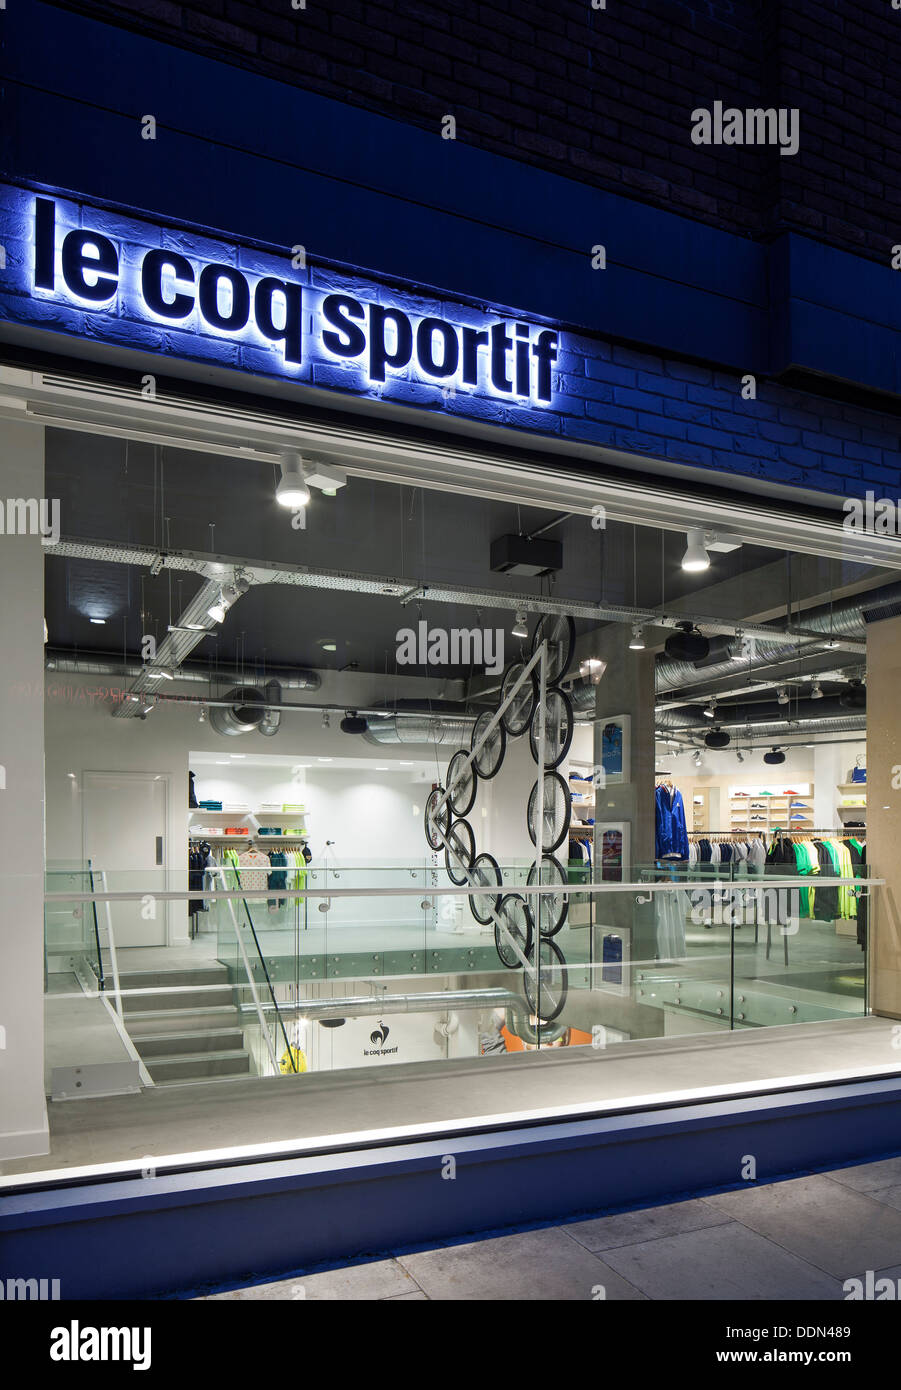 Le Coq Sportif Londra - Flagship Store, Londra, Regno Unito. Architetto: Studio Oscar, 2013. Foto Stock